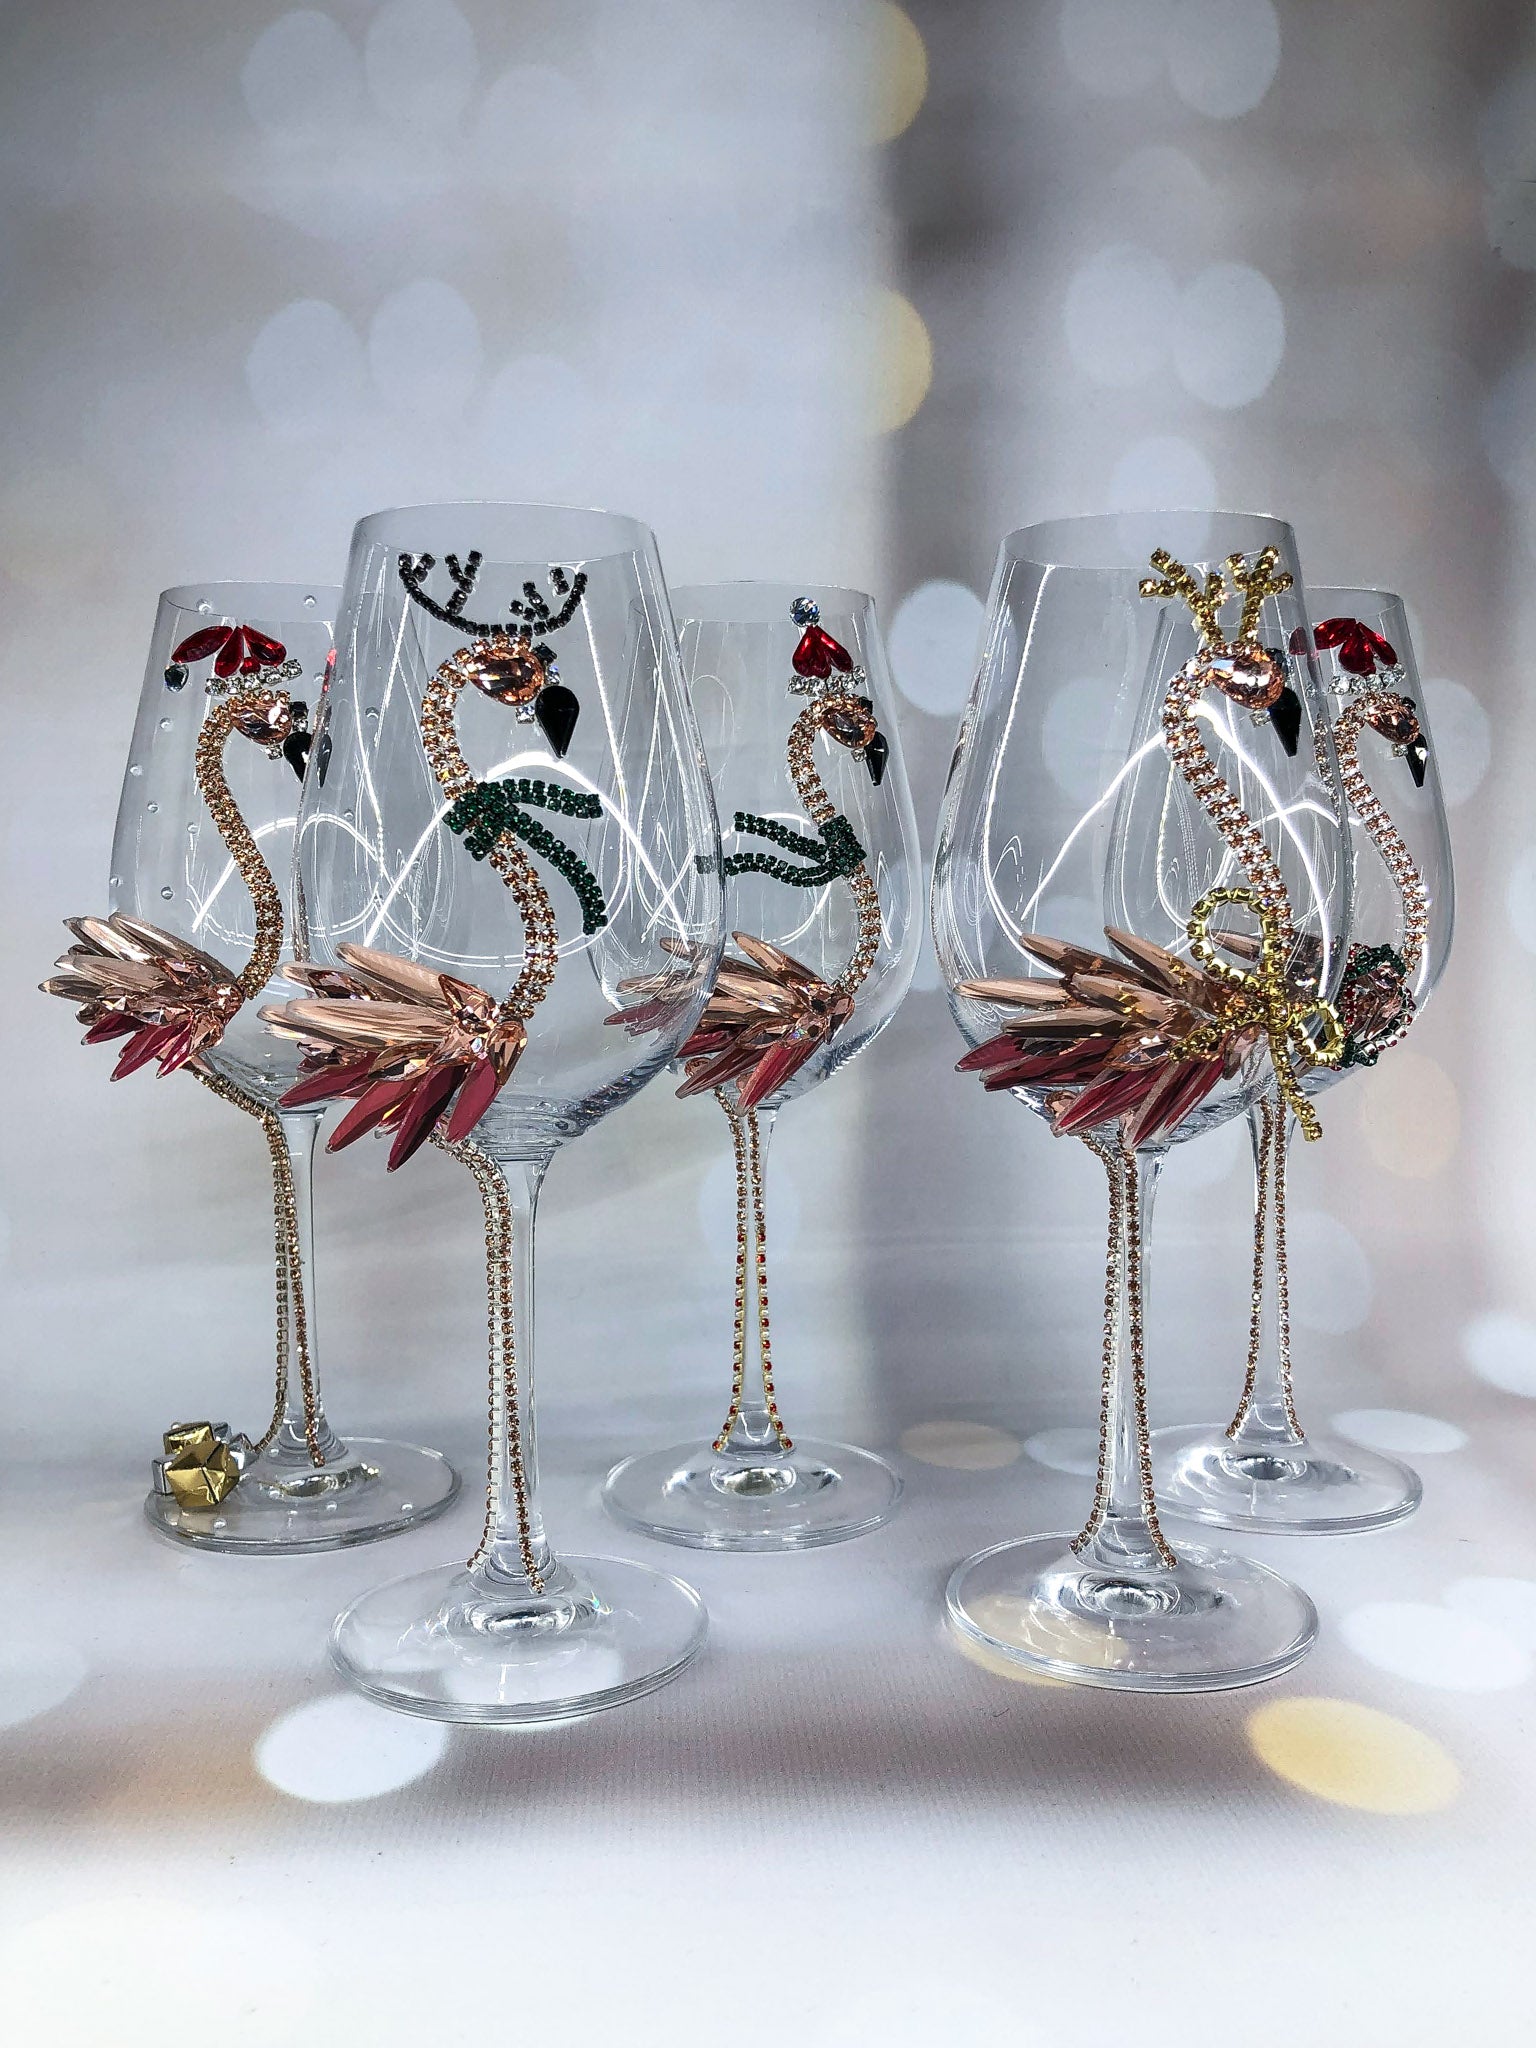 Festive Wine Glass with Bullfinch